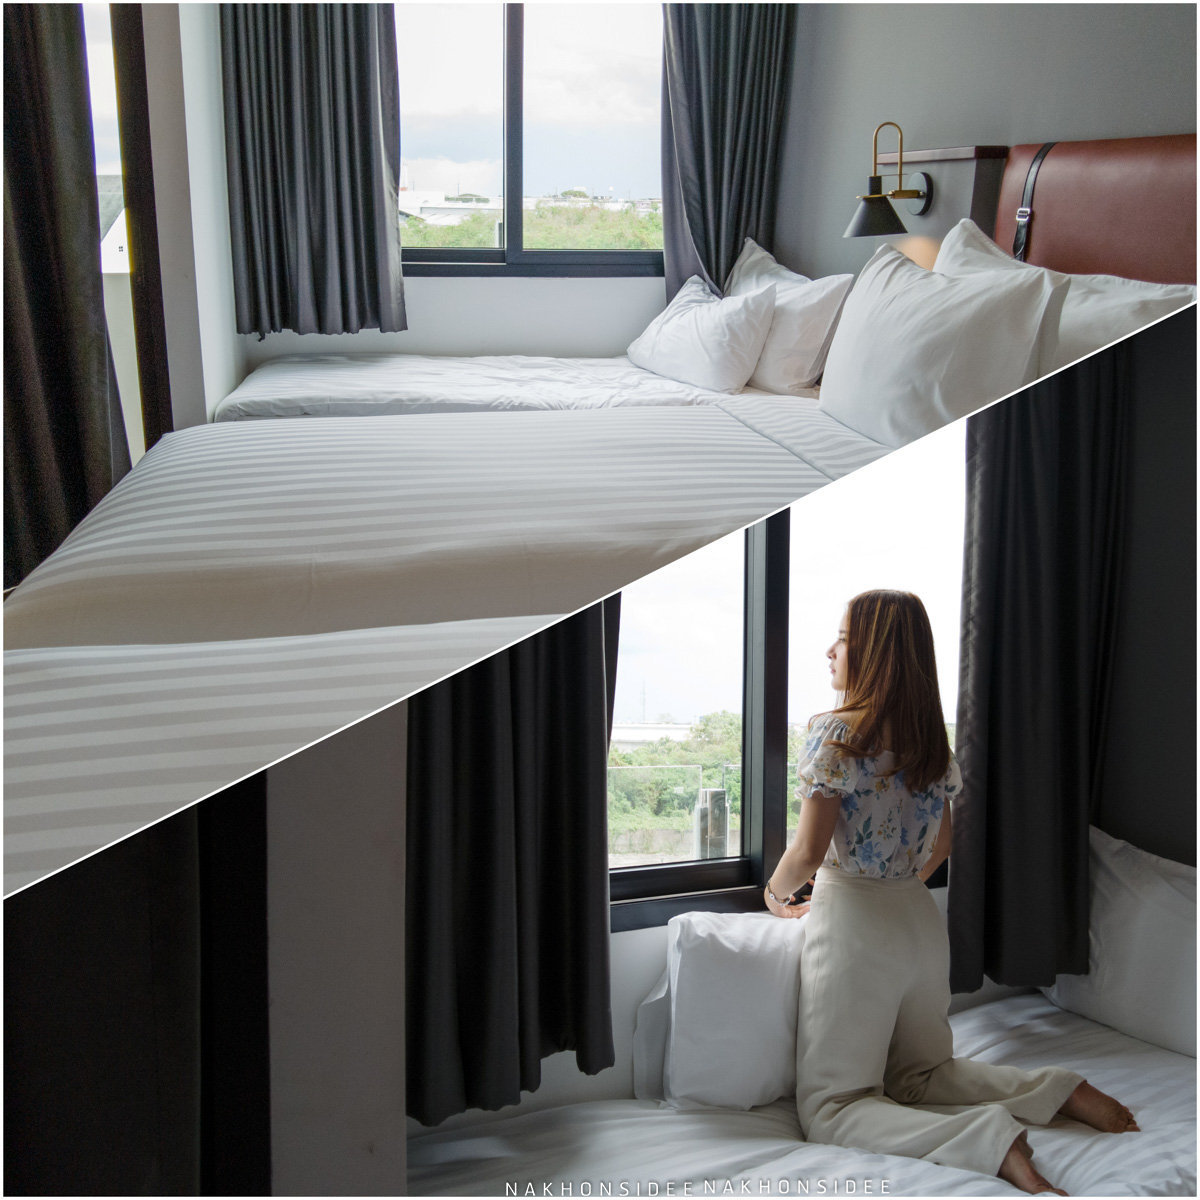 ห้องพักแบบ-Triple -มี-3-เตียงกันเลยทีเดียว-สะดวกสบายมากๆครับ
 hotel,scarlett,nakhonsi,ที่พักเปิดใหม่,ใจกลางเมือง